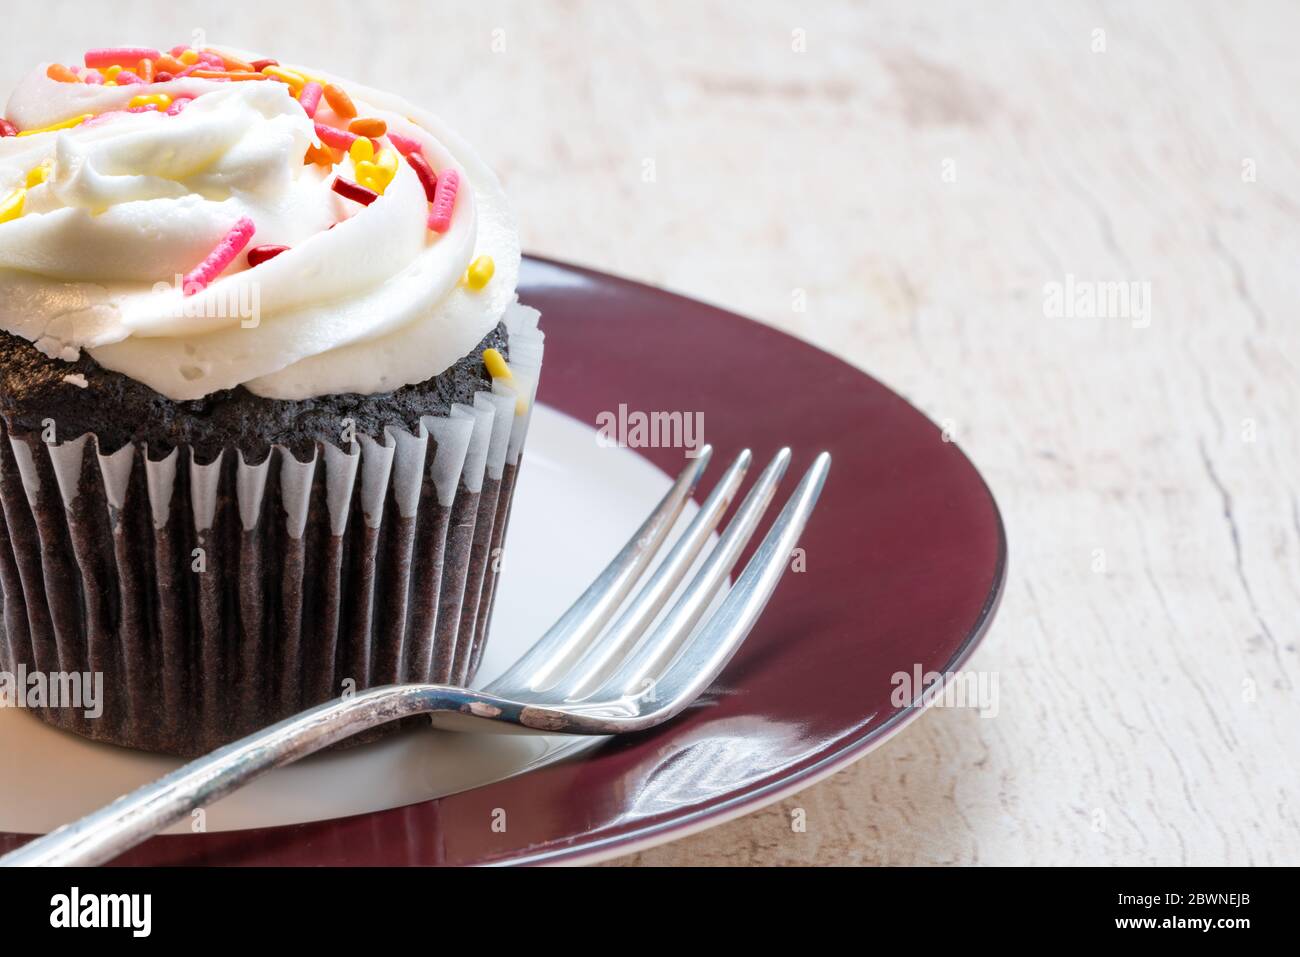 primo piano di una cupcake al cioccolato in un rivestimento di carta con glassa di vaniglia con spruzzini rosa e giallo su un piatto rosso e bianco con forchetta Foto Stock